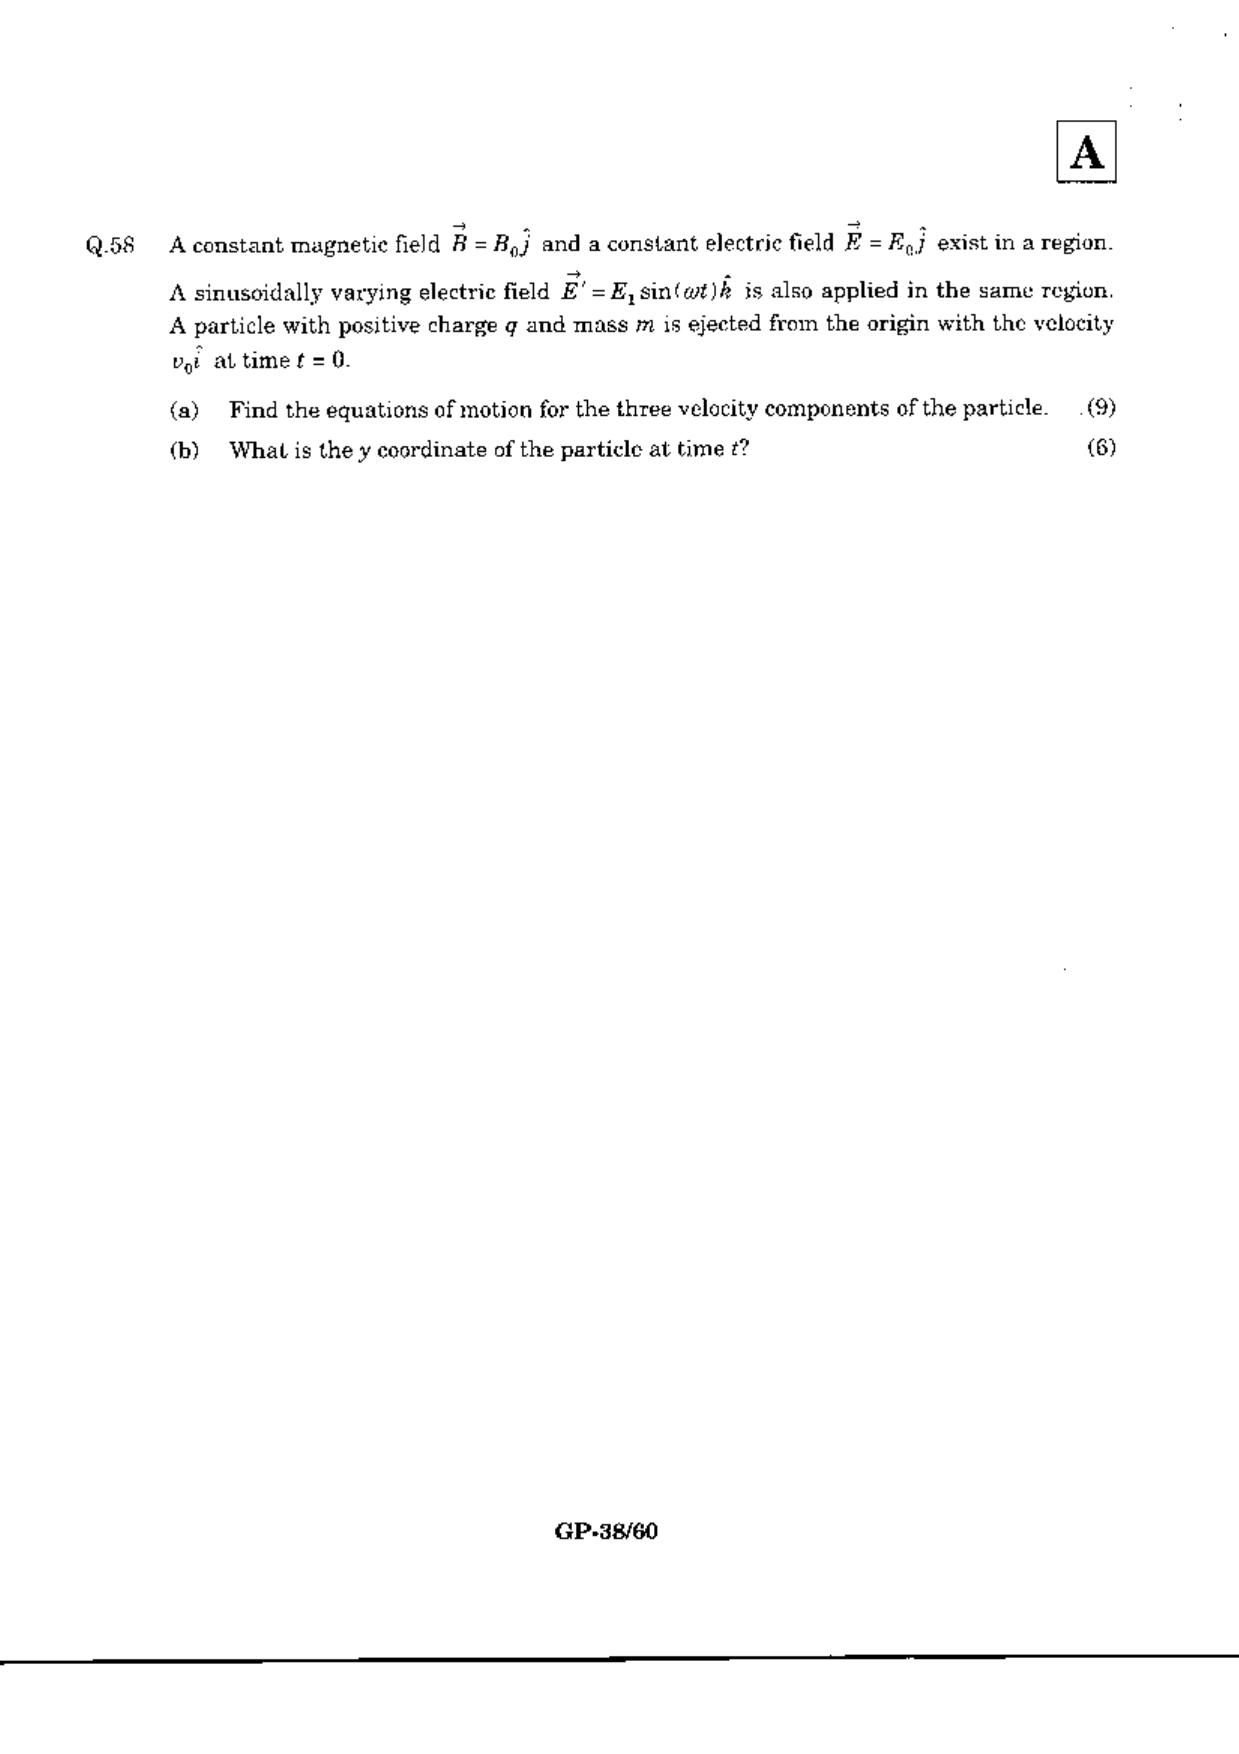 JAM 2010: GP Question Paper - Page 40